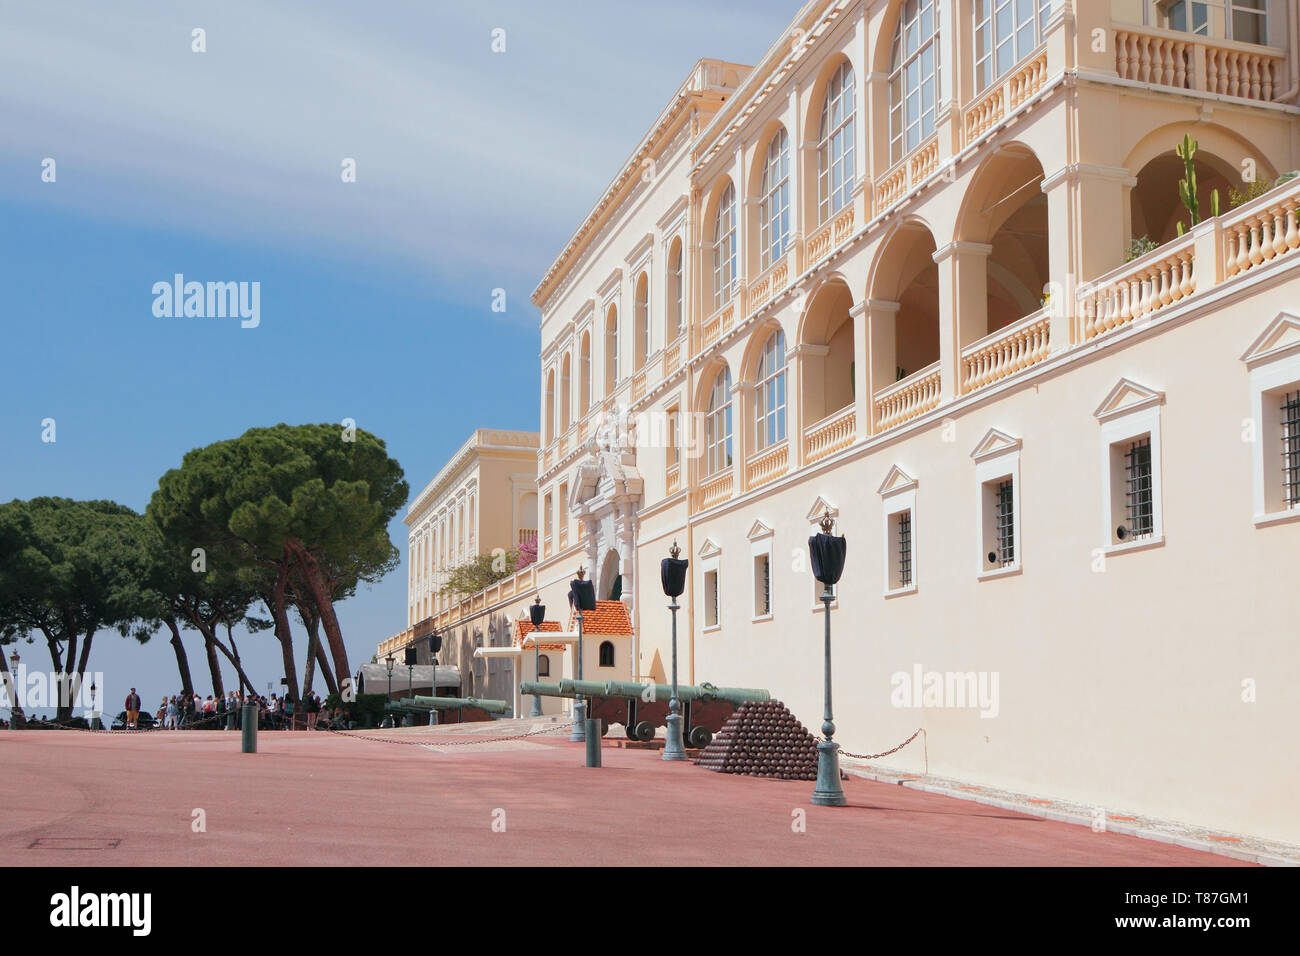 Monte Carlo, Monaco - Apr 19, 2019: Prince's Palace Stockfoto